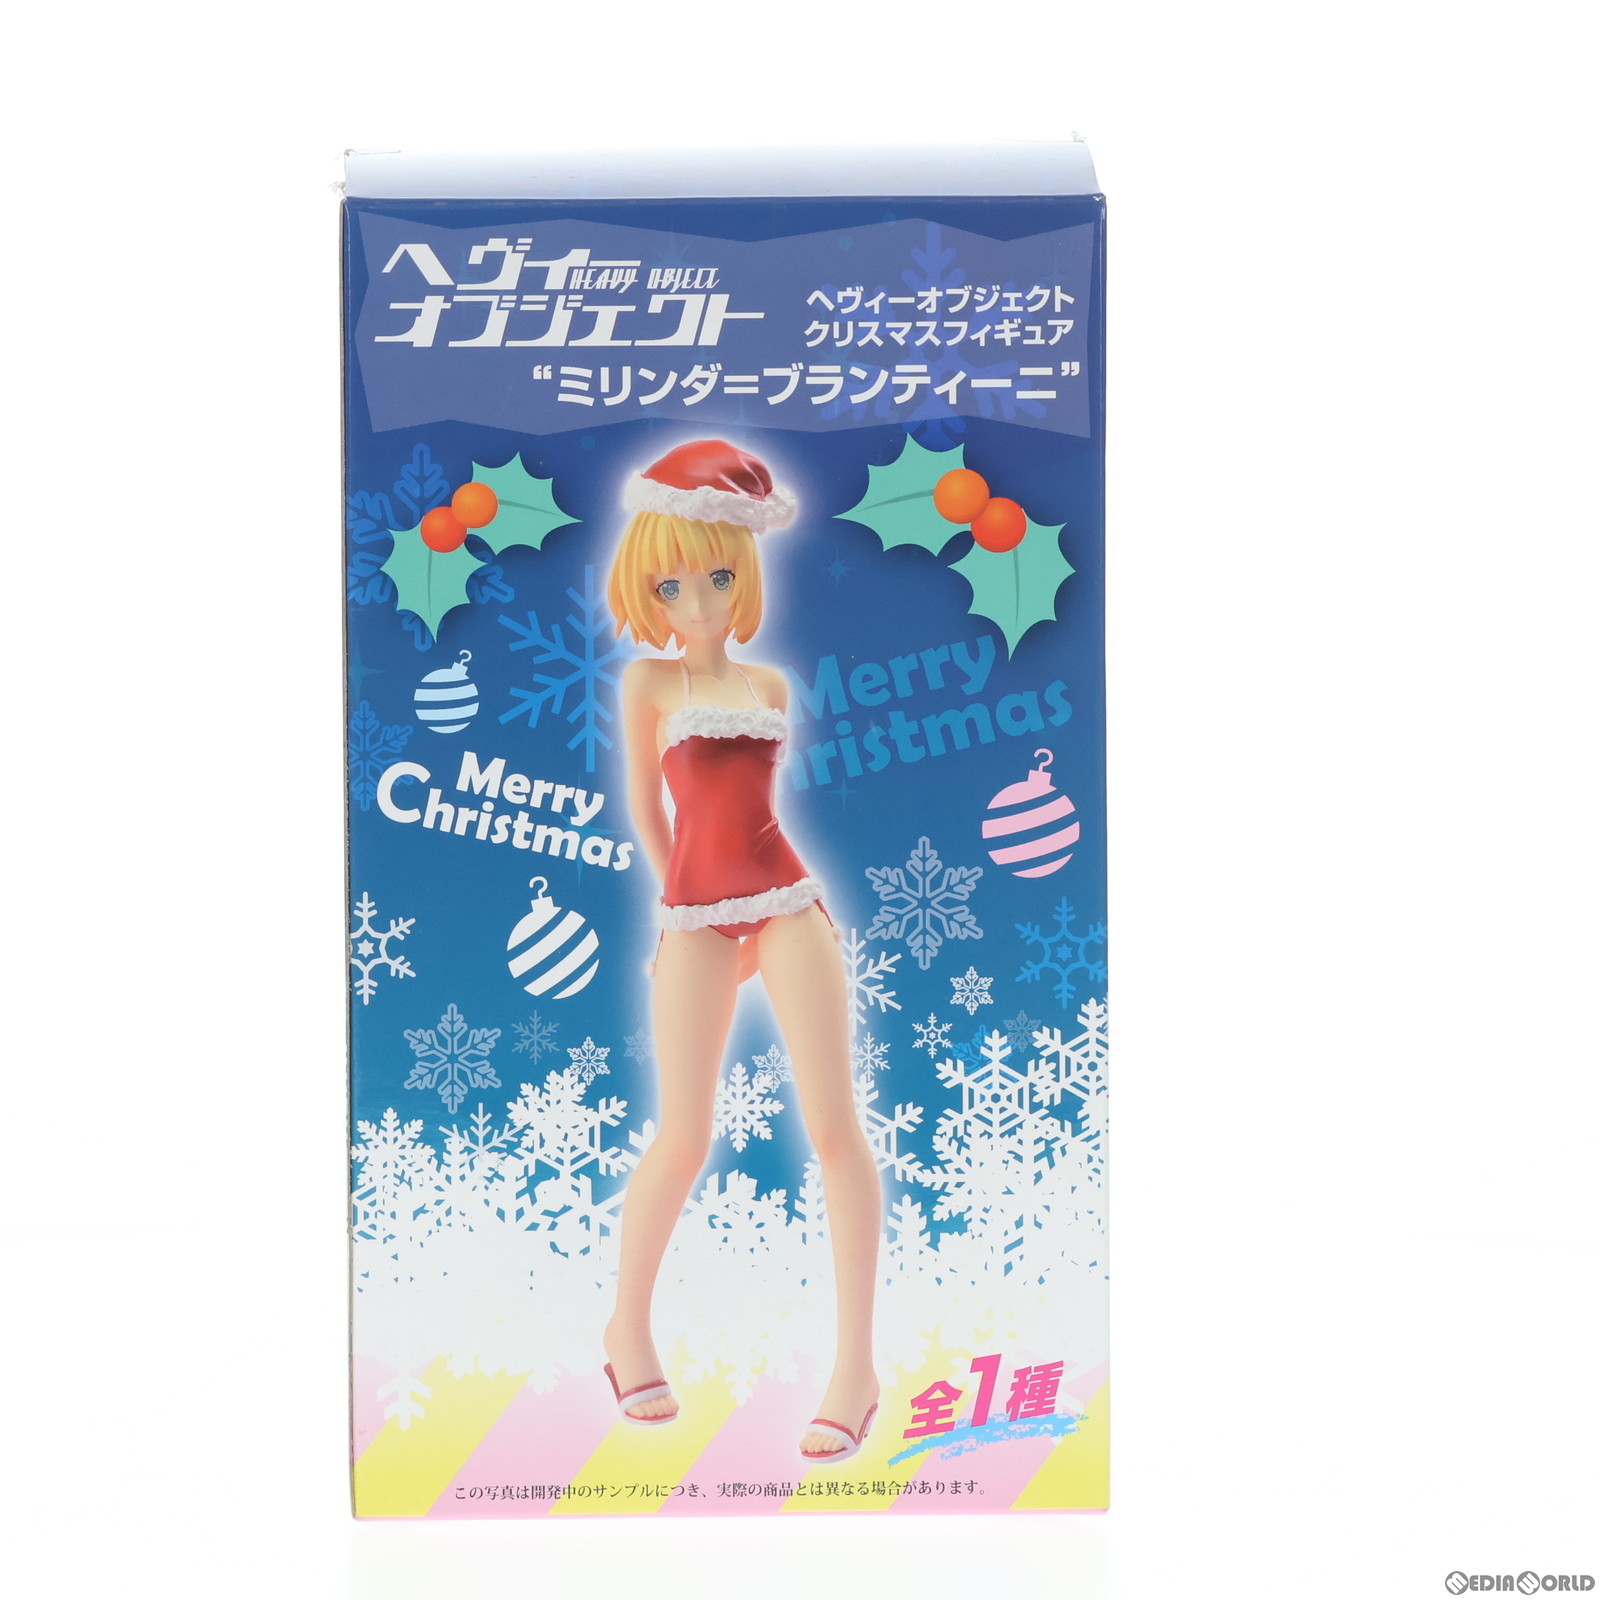 【中古】[FIG]ミリンダ=ブランティーニ クリスマスフィギュア ヘヴィーオブジェクト プライズ(1012200) セガ(20151120)画像